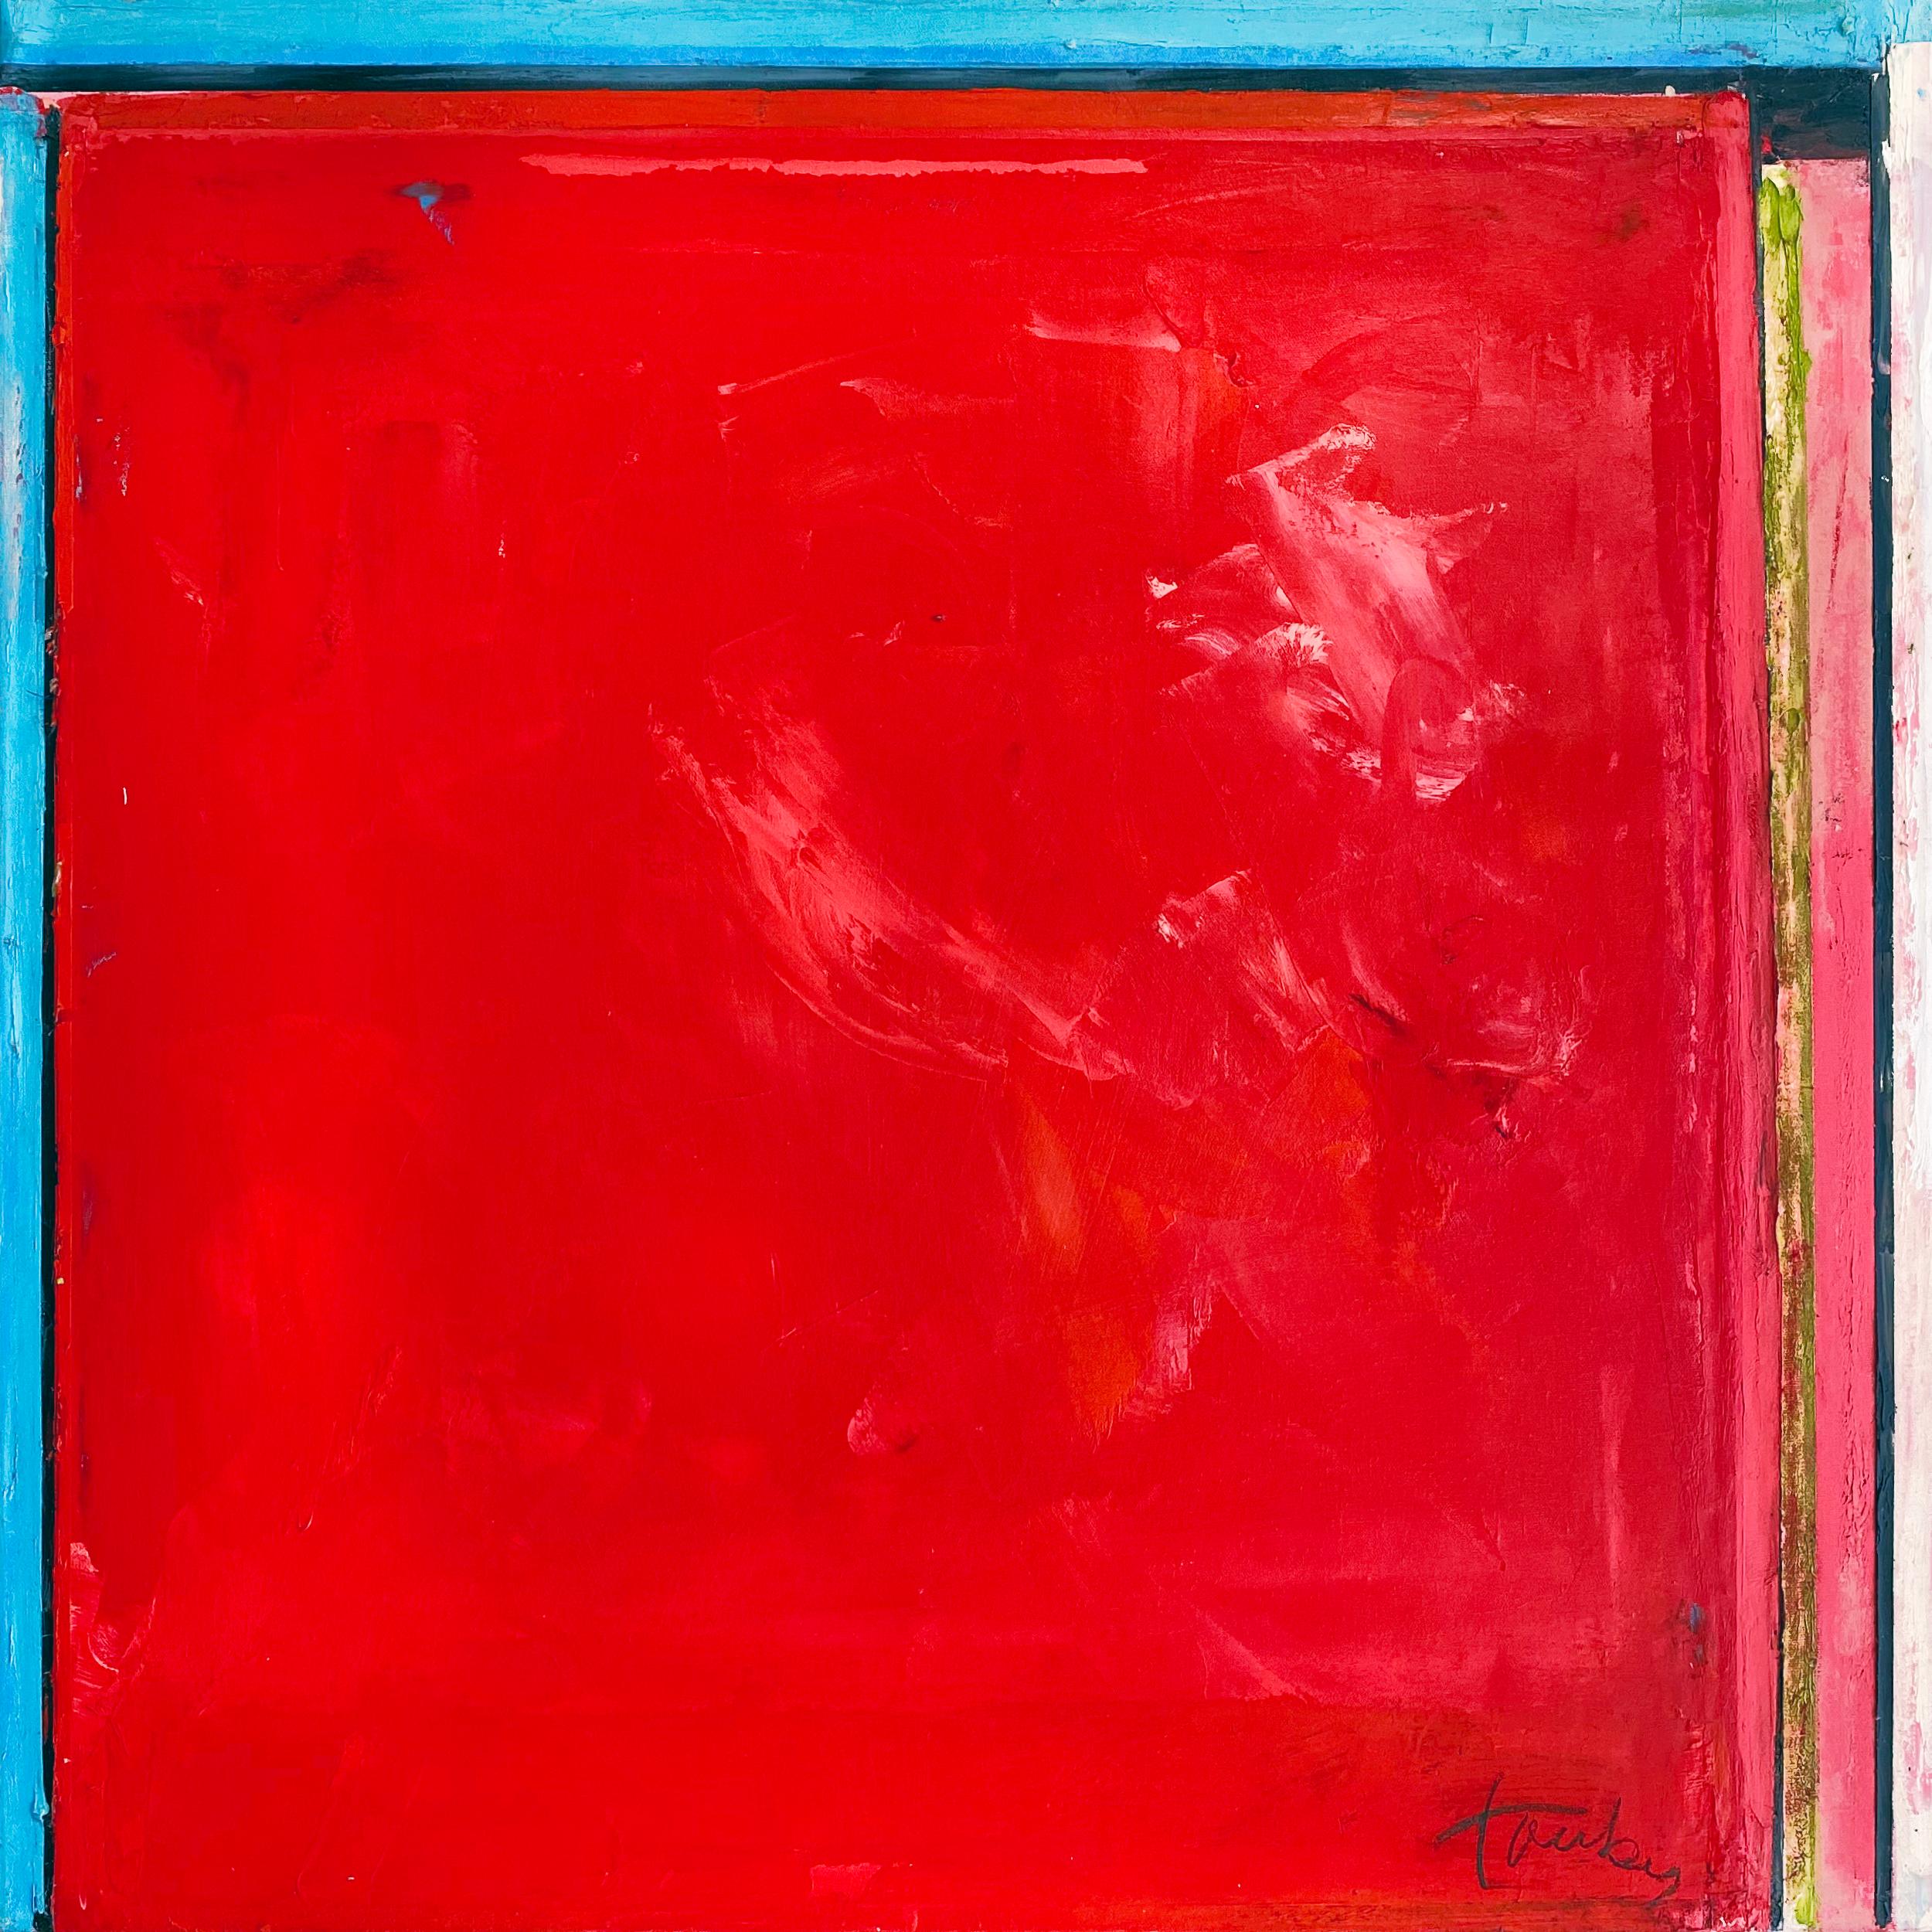 "Tauben 562" von Linda Touby, ca. 2010. Öl und Wachs auf Leinwand, 30 x 30 cm. Dieses Gemälde zeigt strukturierte Streifen aus leuchtenden Pigmenten wie Rot, Orange, Blau, Schwarz, Grün und Weiß. 

Dieses schöne Gemälde stammt aus Linda Toubys